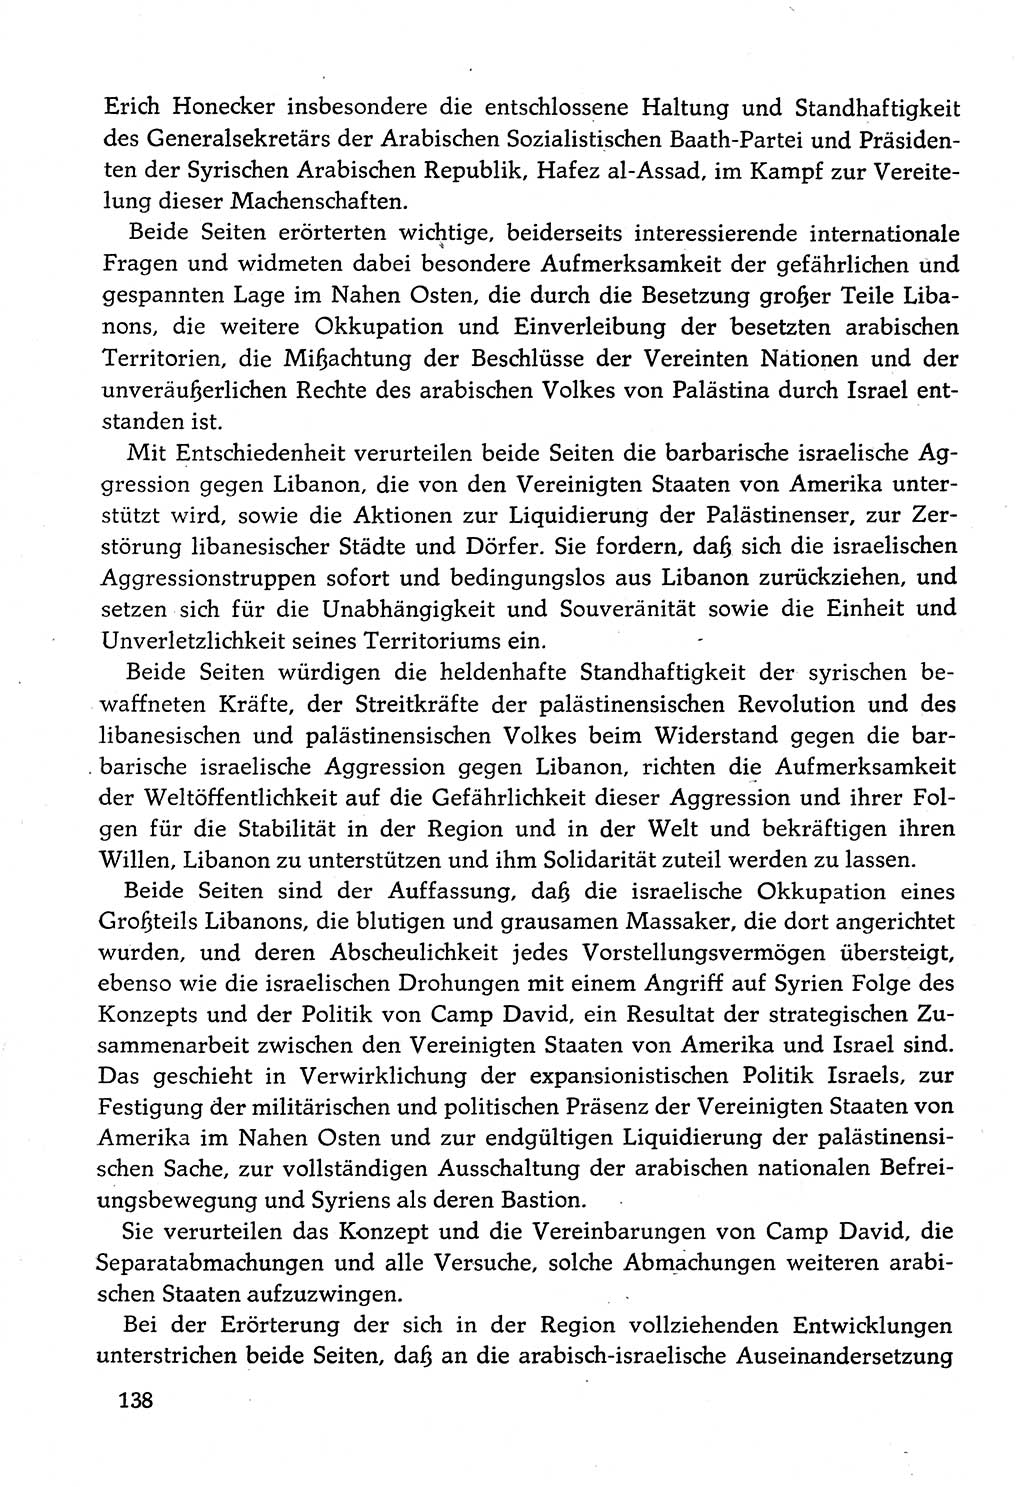 Dokumente der Sozialistischen Einheitspartei Deutschlands (SED) [Deutsche Demokratische Republik (DDR)] 1982-1983, Seite 138 (Dok. SED DDR 1982-1983, S. 138)